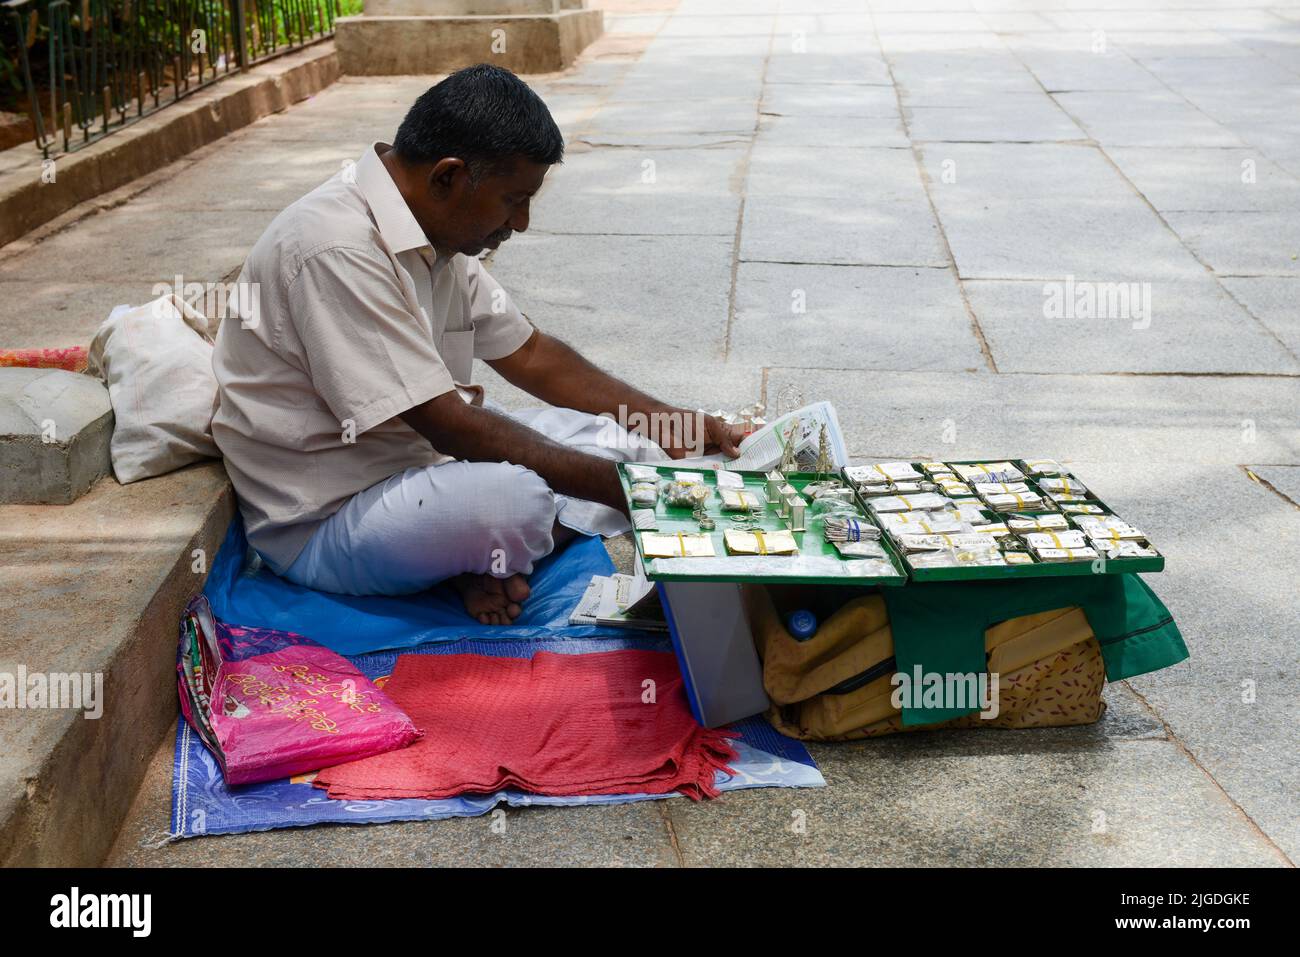 Tirupati, Inde - 16 septembre 2013: Un homme indien vendant des marchandises dans la rue de Tirupati dans l'État d'Andhra Pradesh en Inde. Banque D'Images